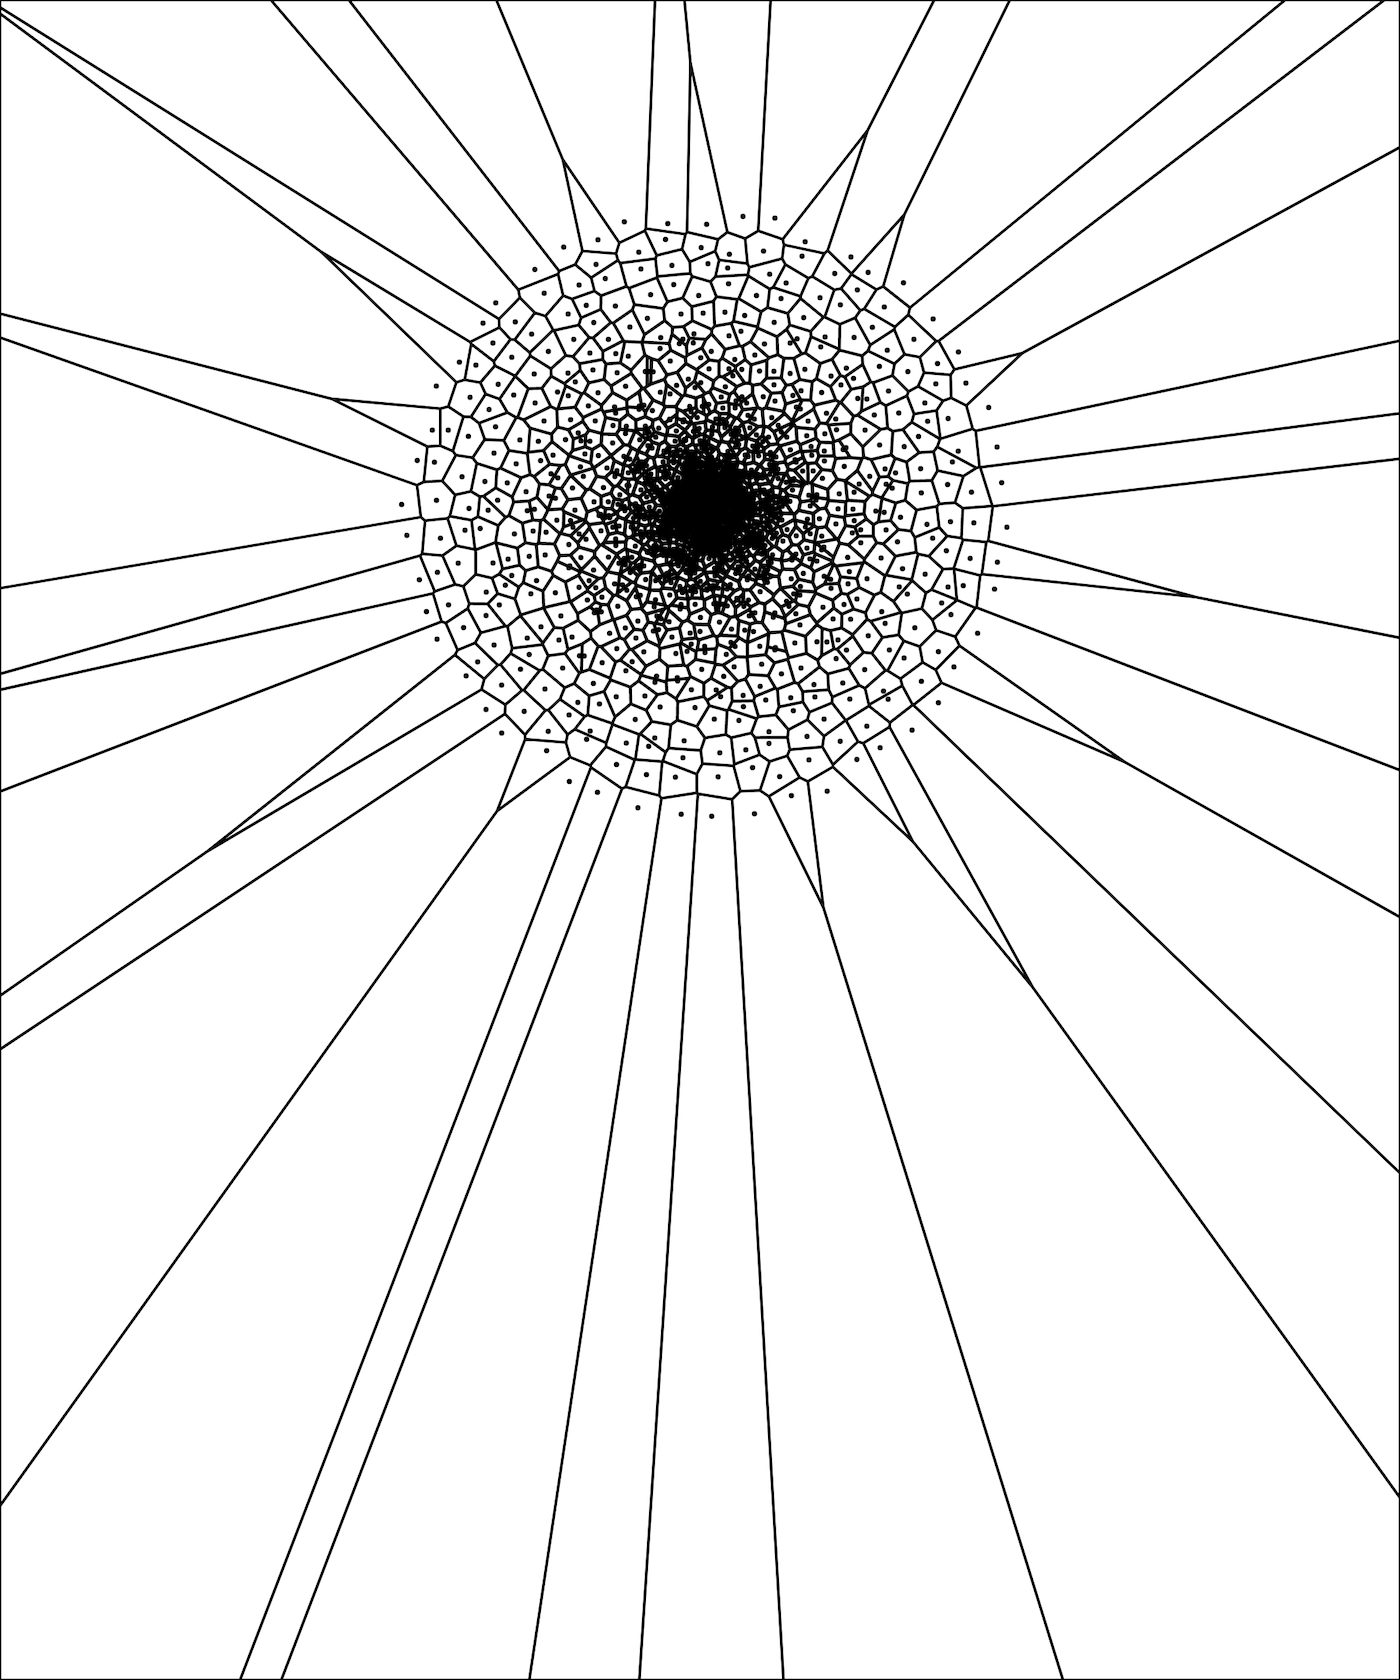 And corresponding Voronoi diagram